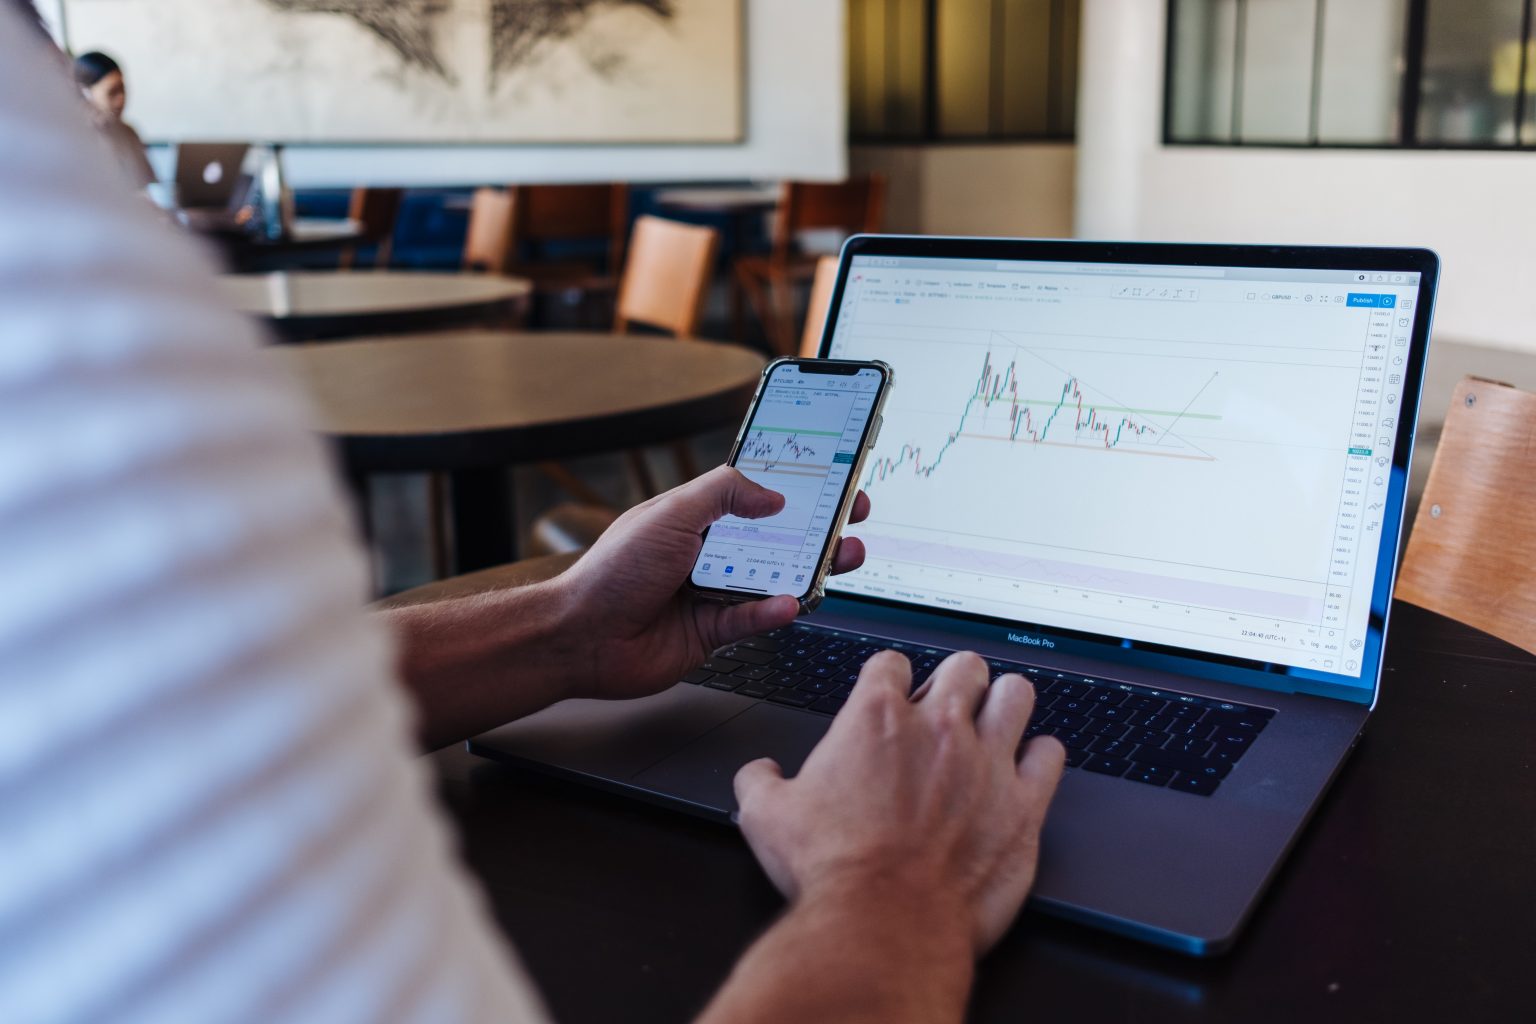 Mann sitzt vor einem Laptop. Mit seiner linken Hand schließt er einen Margin-Handel am Aktienmarkt ab. Mit der rechten Hand bedingt er den Laptop, dessen Screen einen Kurschart zeigt.